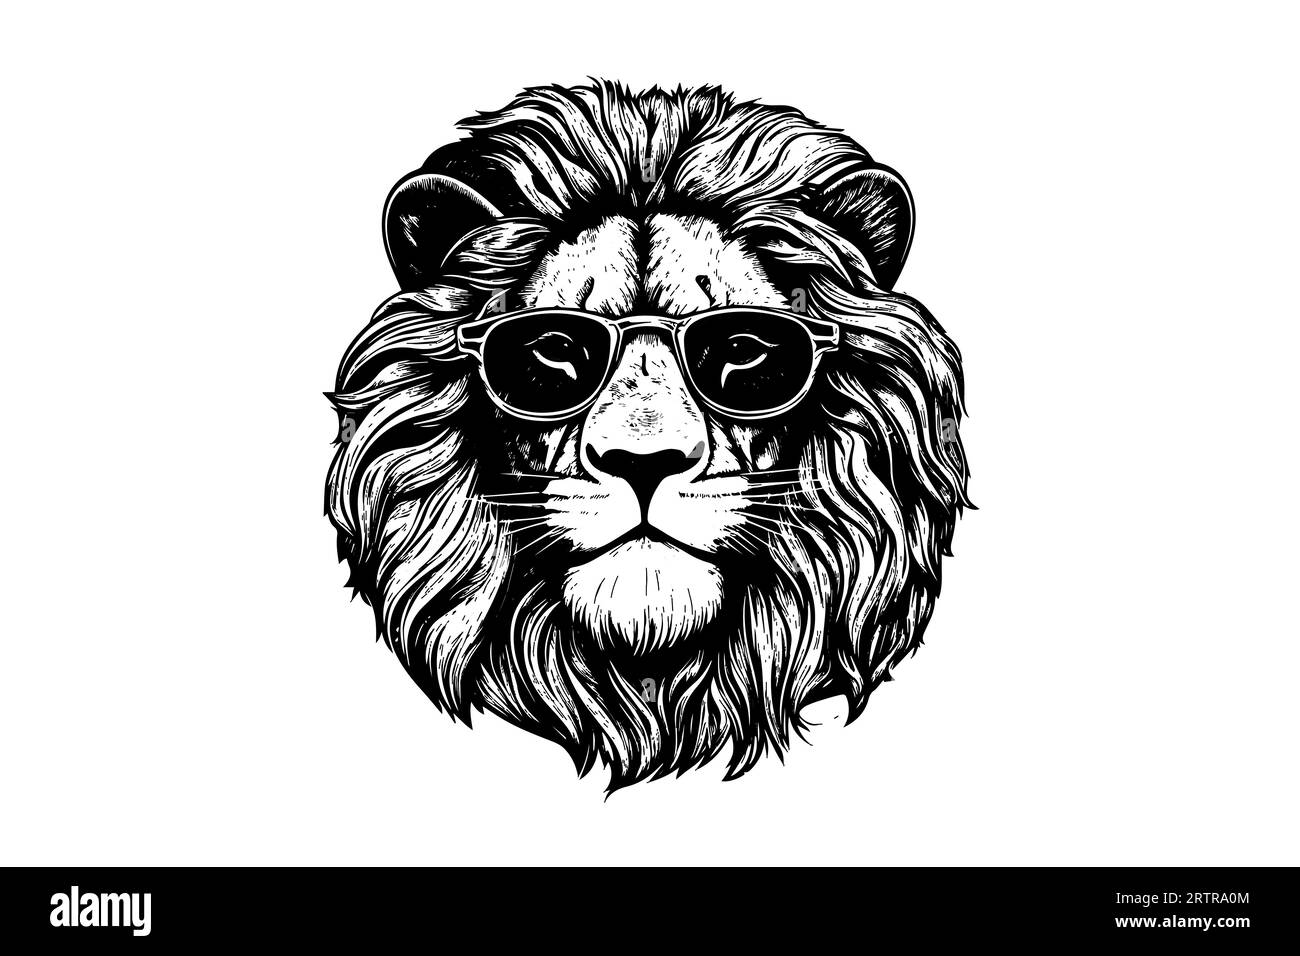 La tête de lion dans les lunettes dessinent à la main la gravure vintage illustration vectorielle noir et blanc sur un fond blanc. Illustration de Vecteur